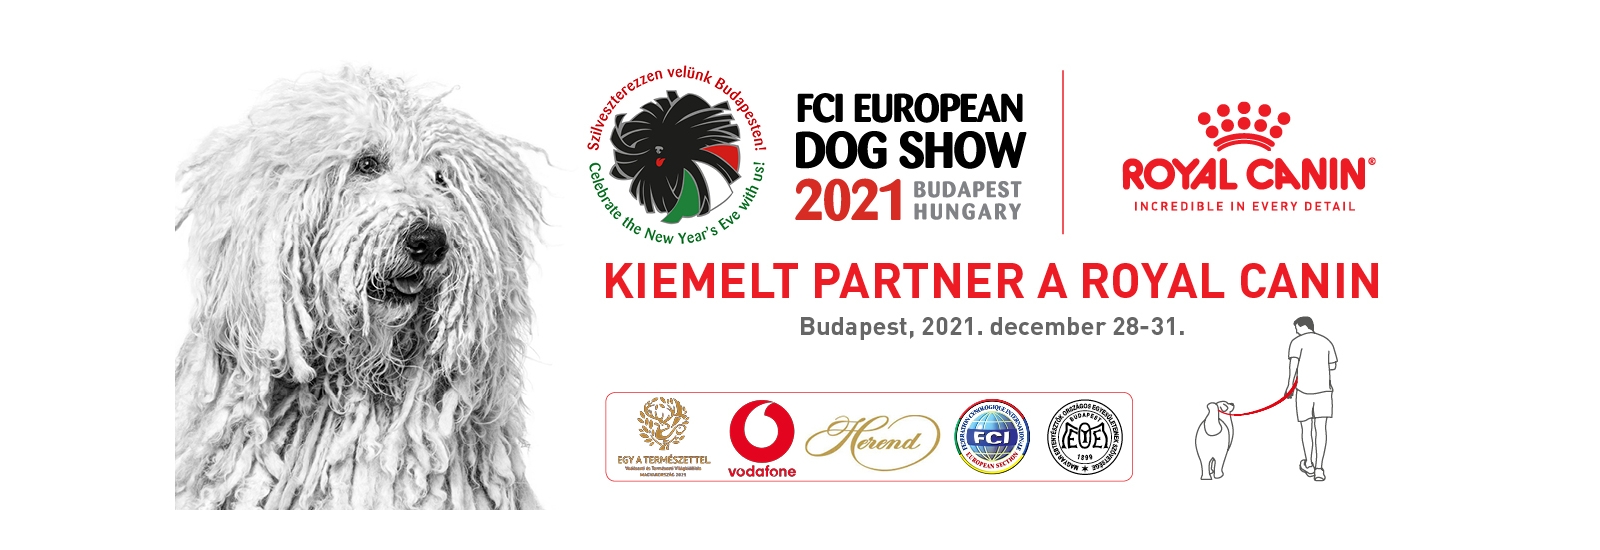 Euro Dog Show 2021 - Budapest